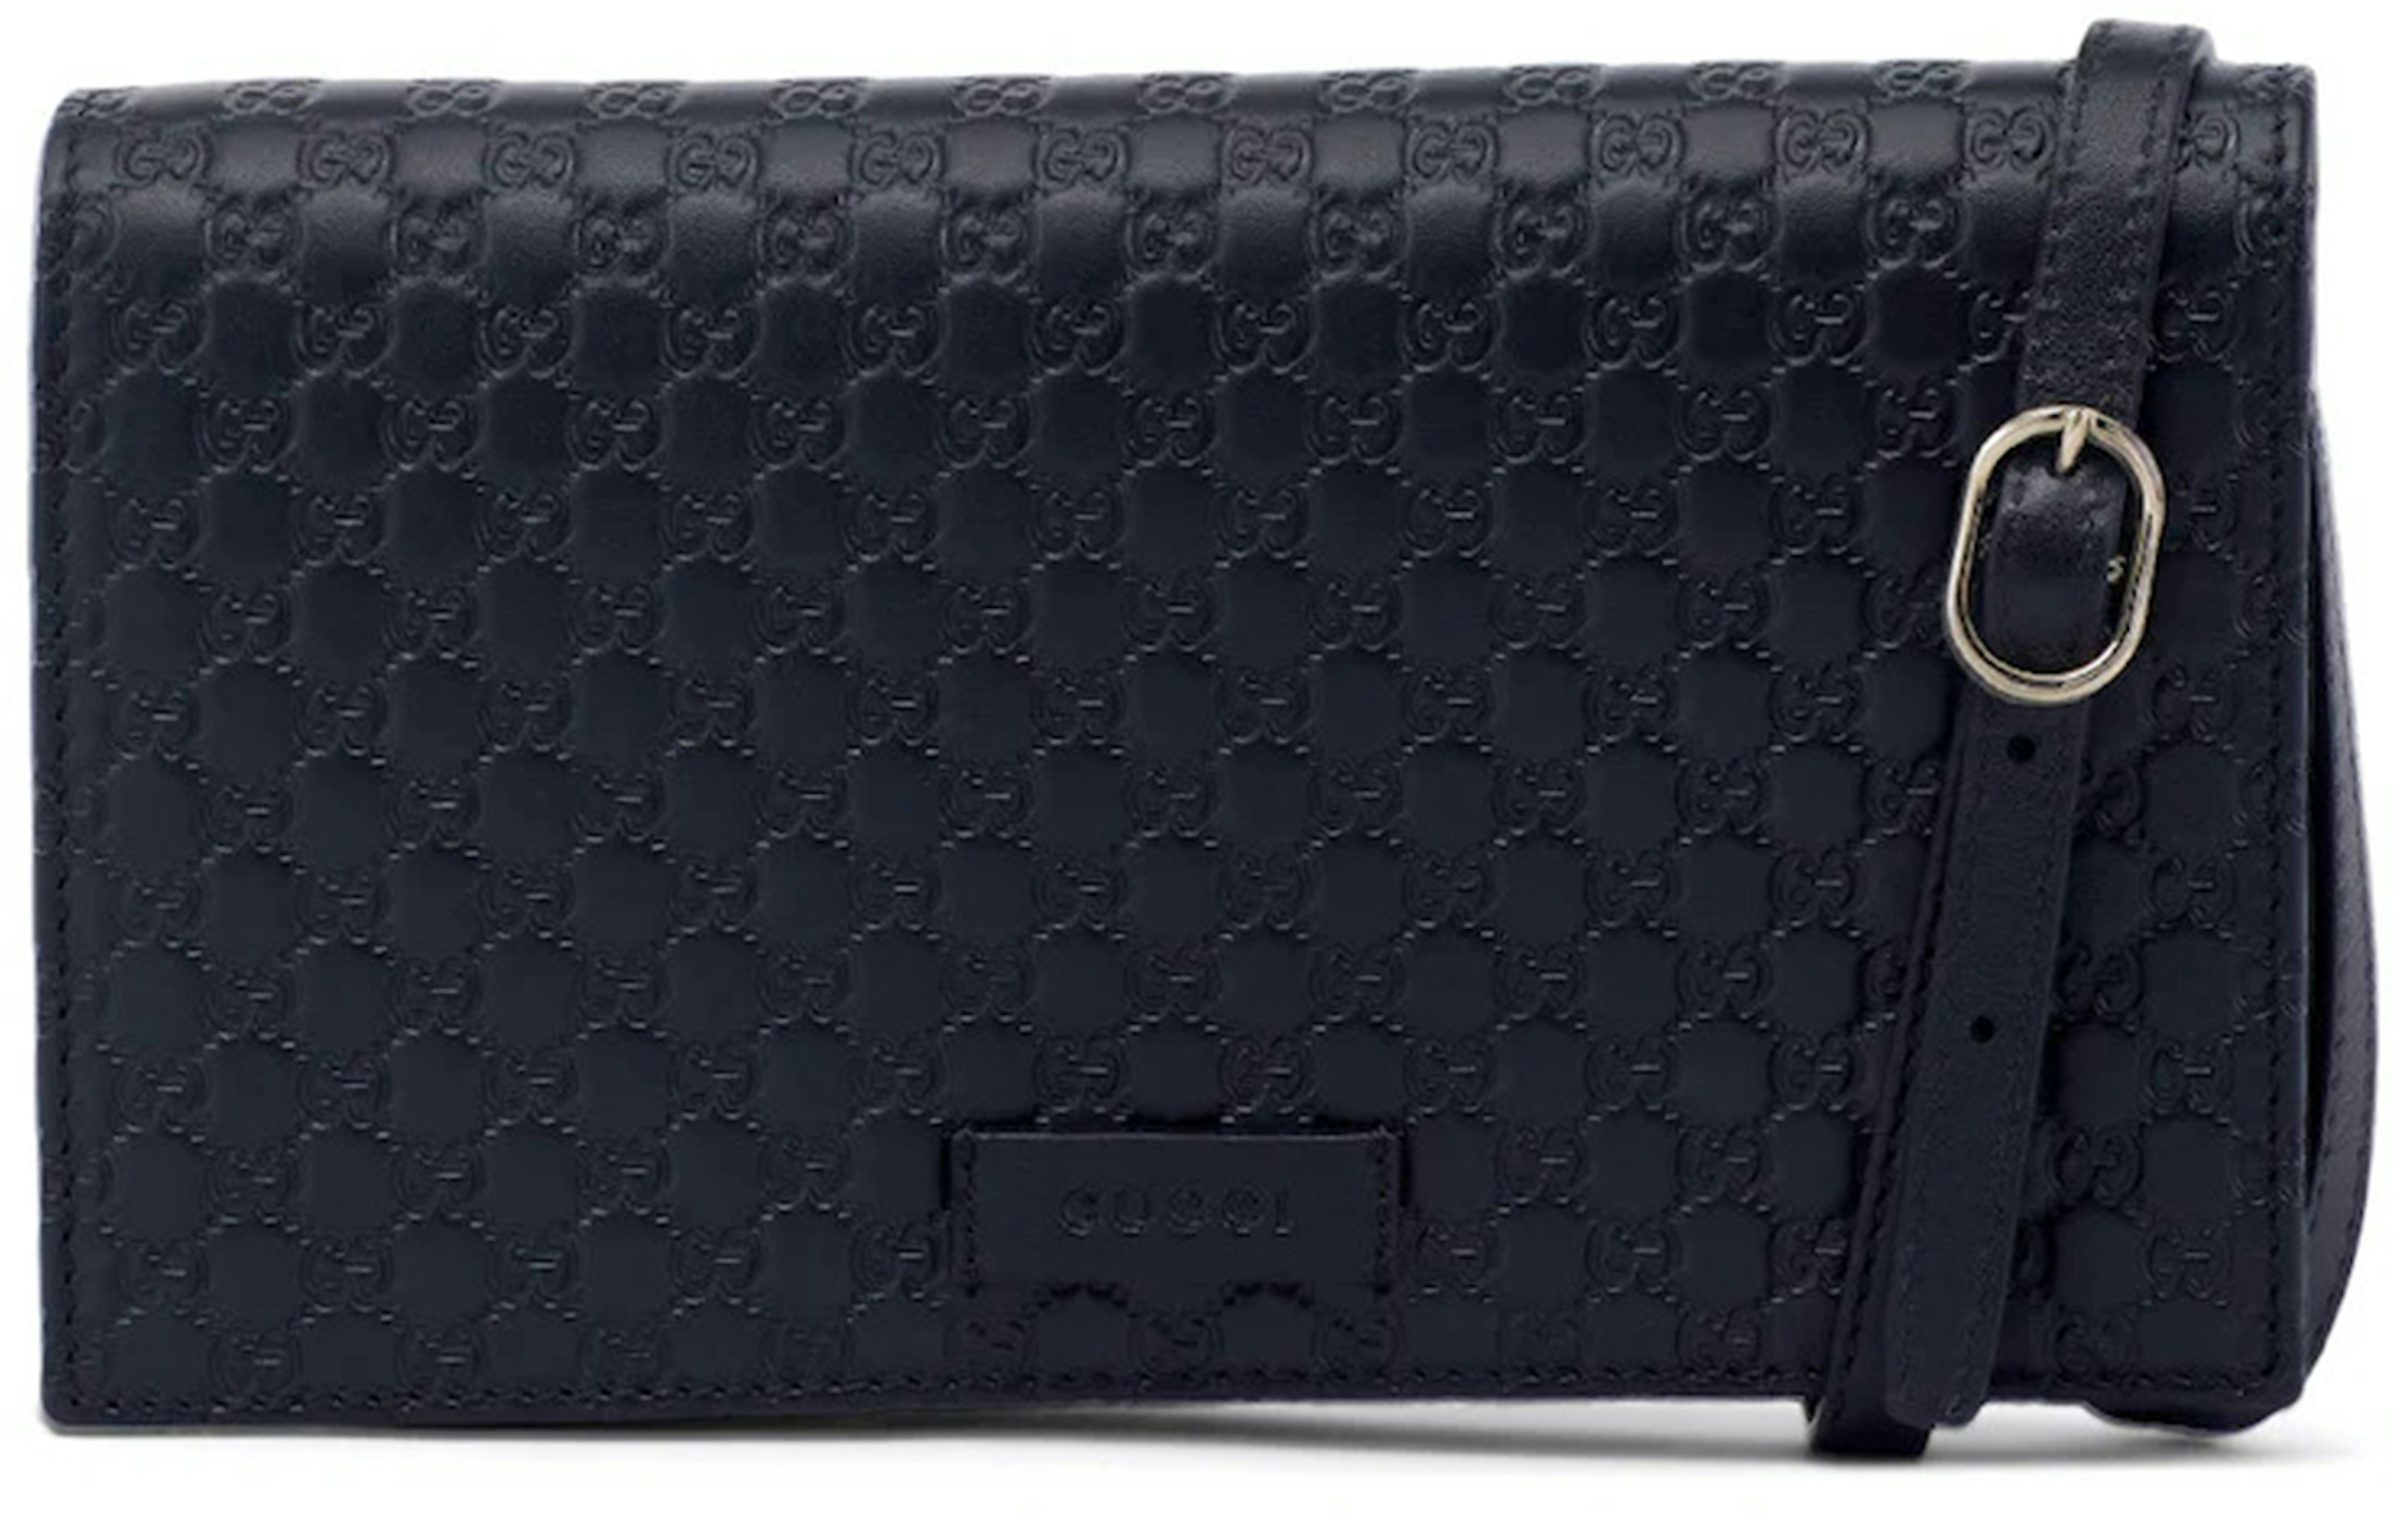 GUCCI GG Micro Guccissima Leather Crossbody Wallet Black 466507 - 15%